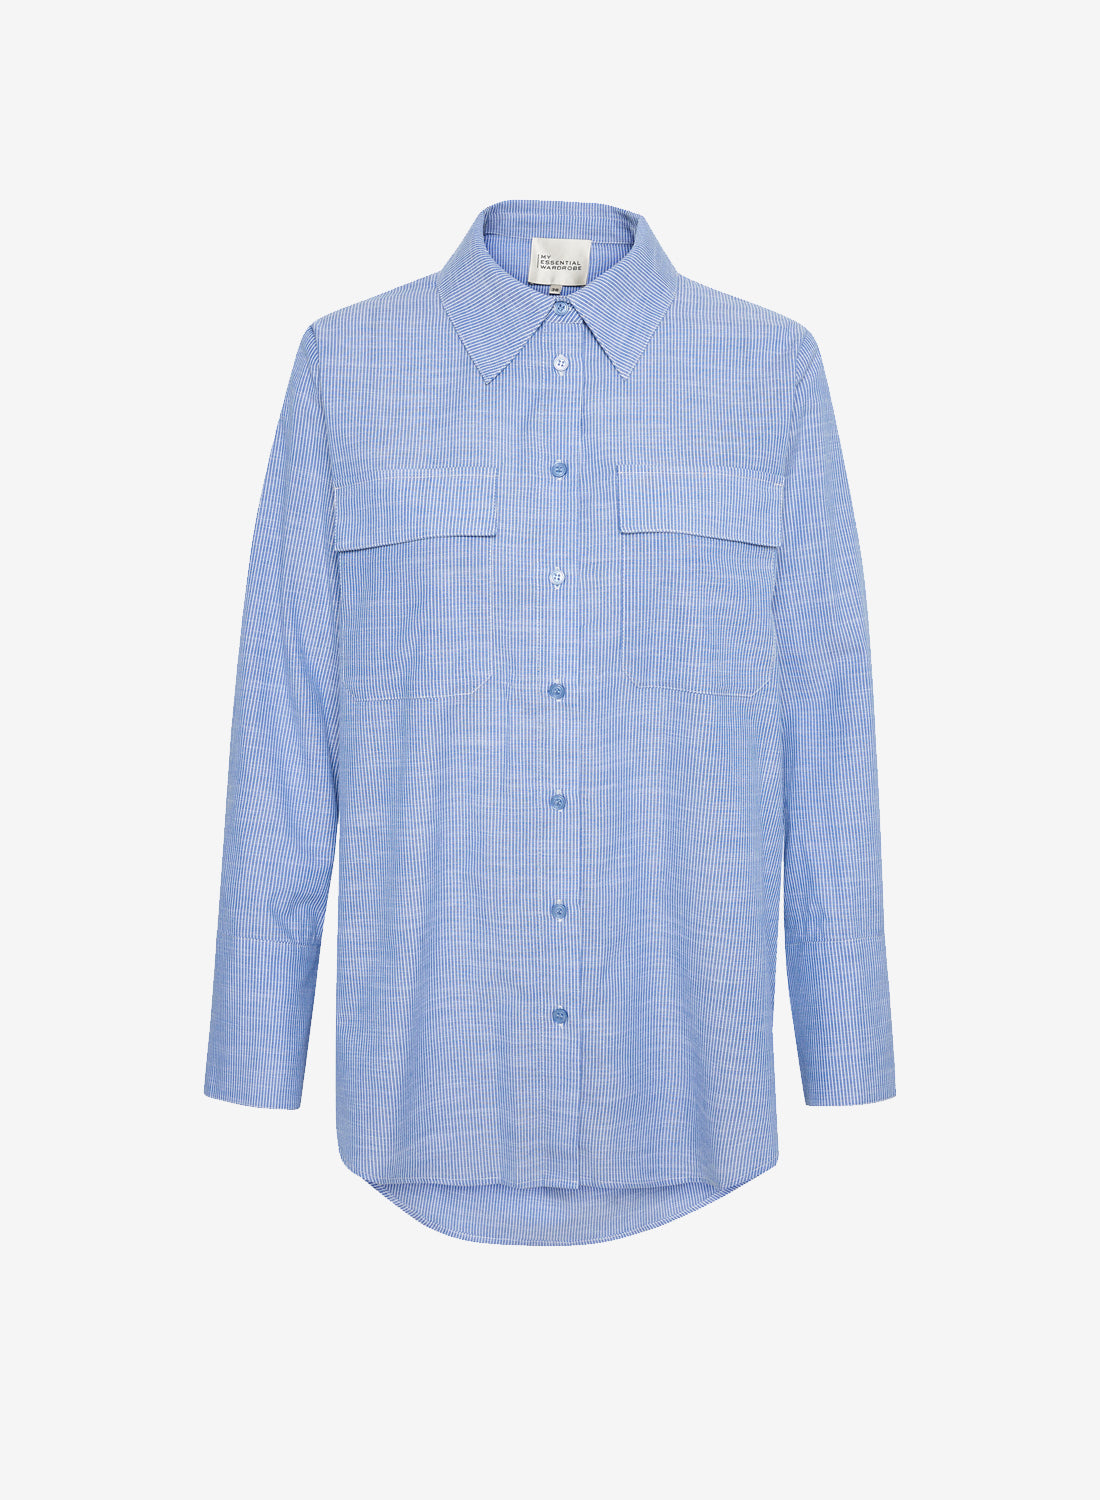 My Essential Wardrobe SkyeMW Shirt Delft Blue